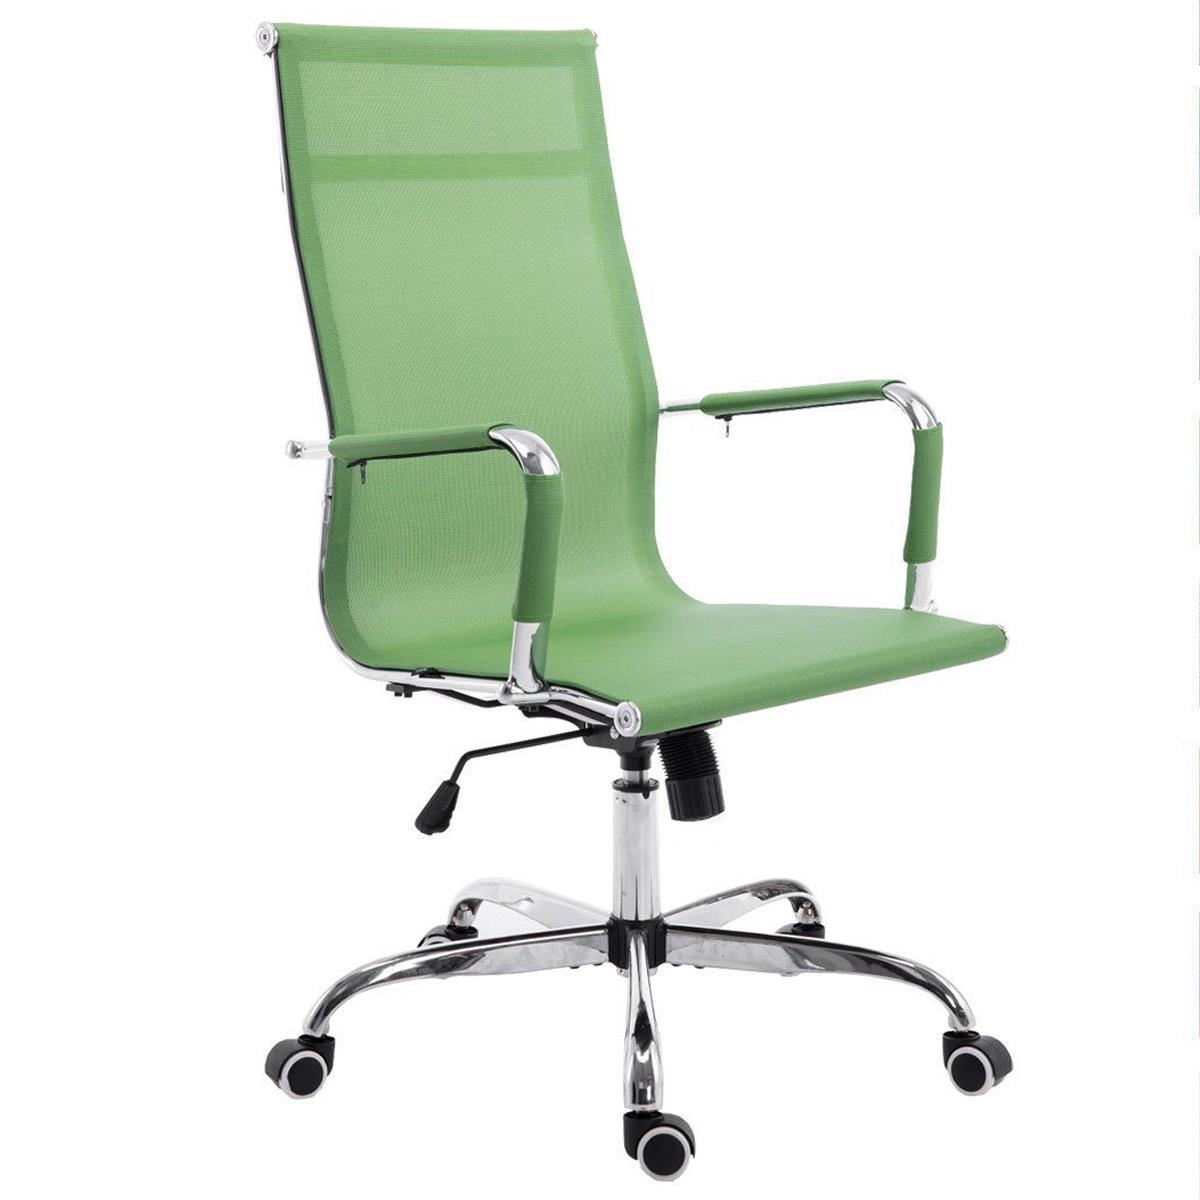 Chaise de bureau ITALIE, Structure Métallique, Magnifique Design en Maille Respirable, Vert